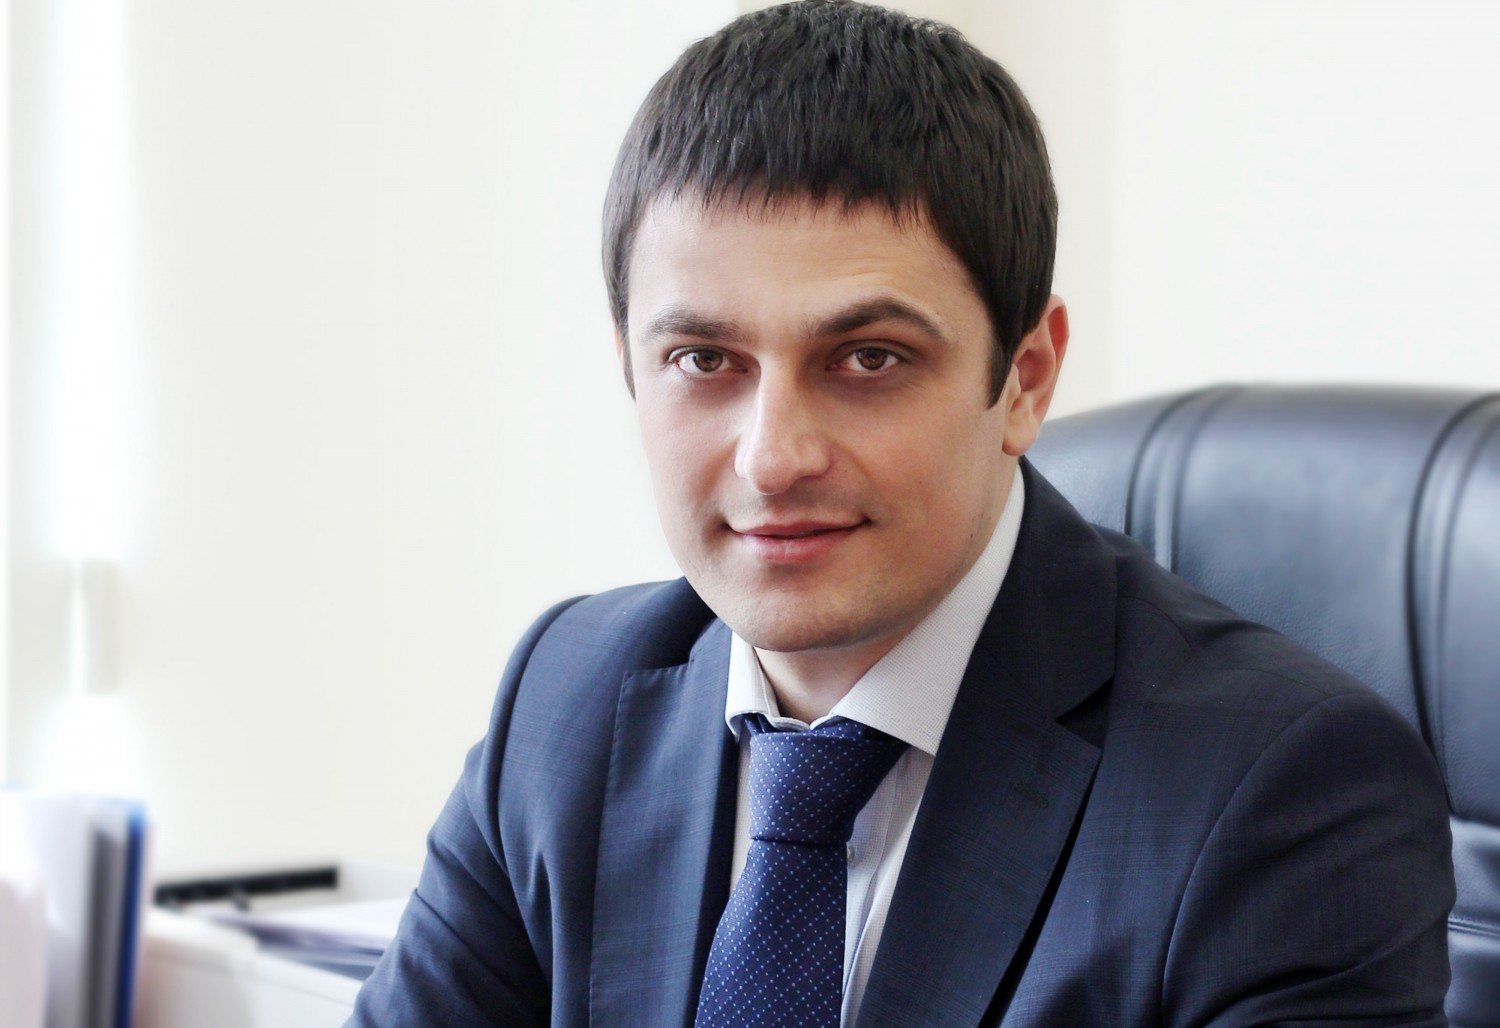 Христофор Константиниди - новый министр курортов, туризма и олимпийского наследия Краснодарского края